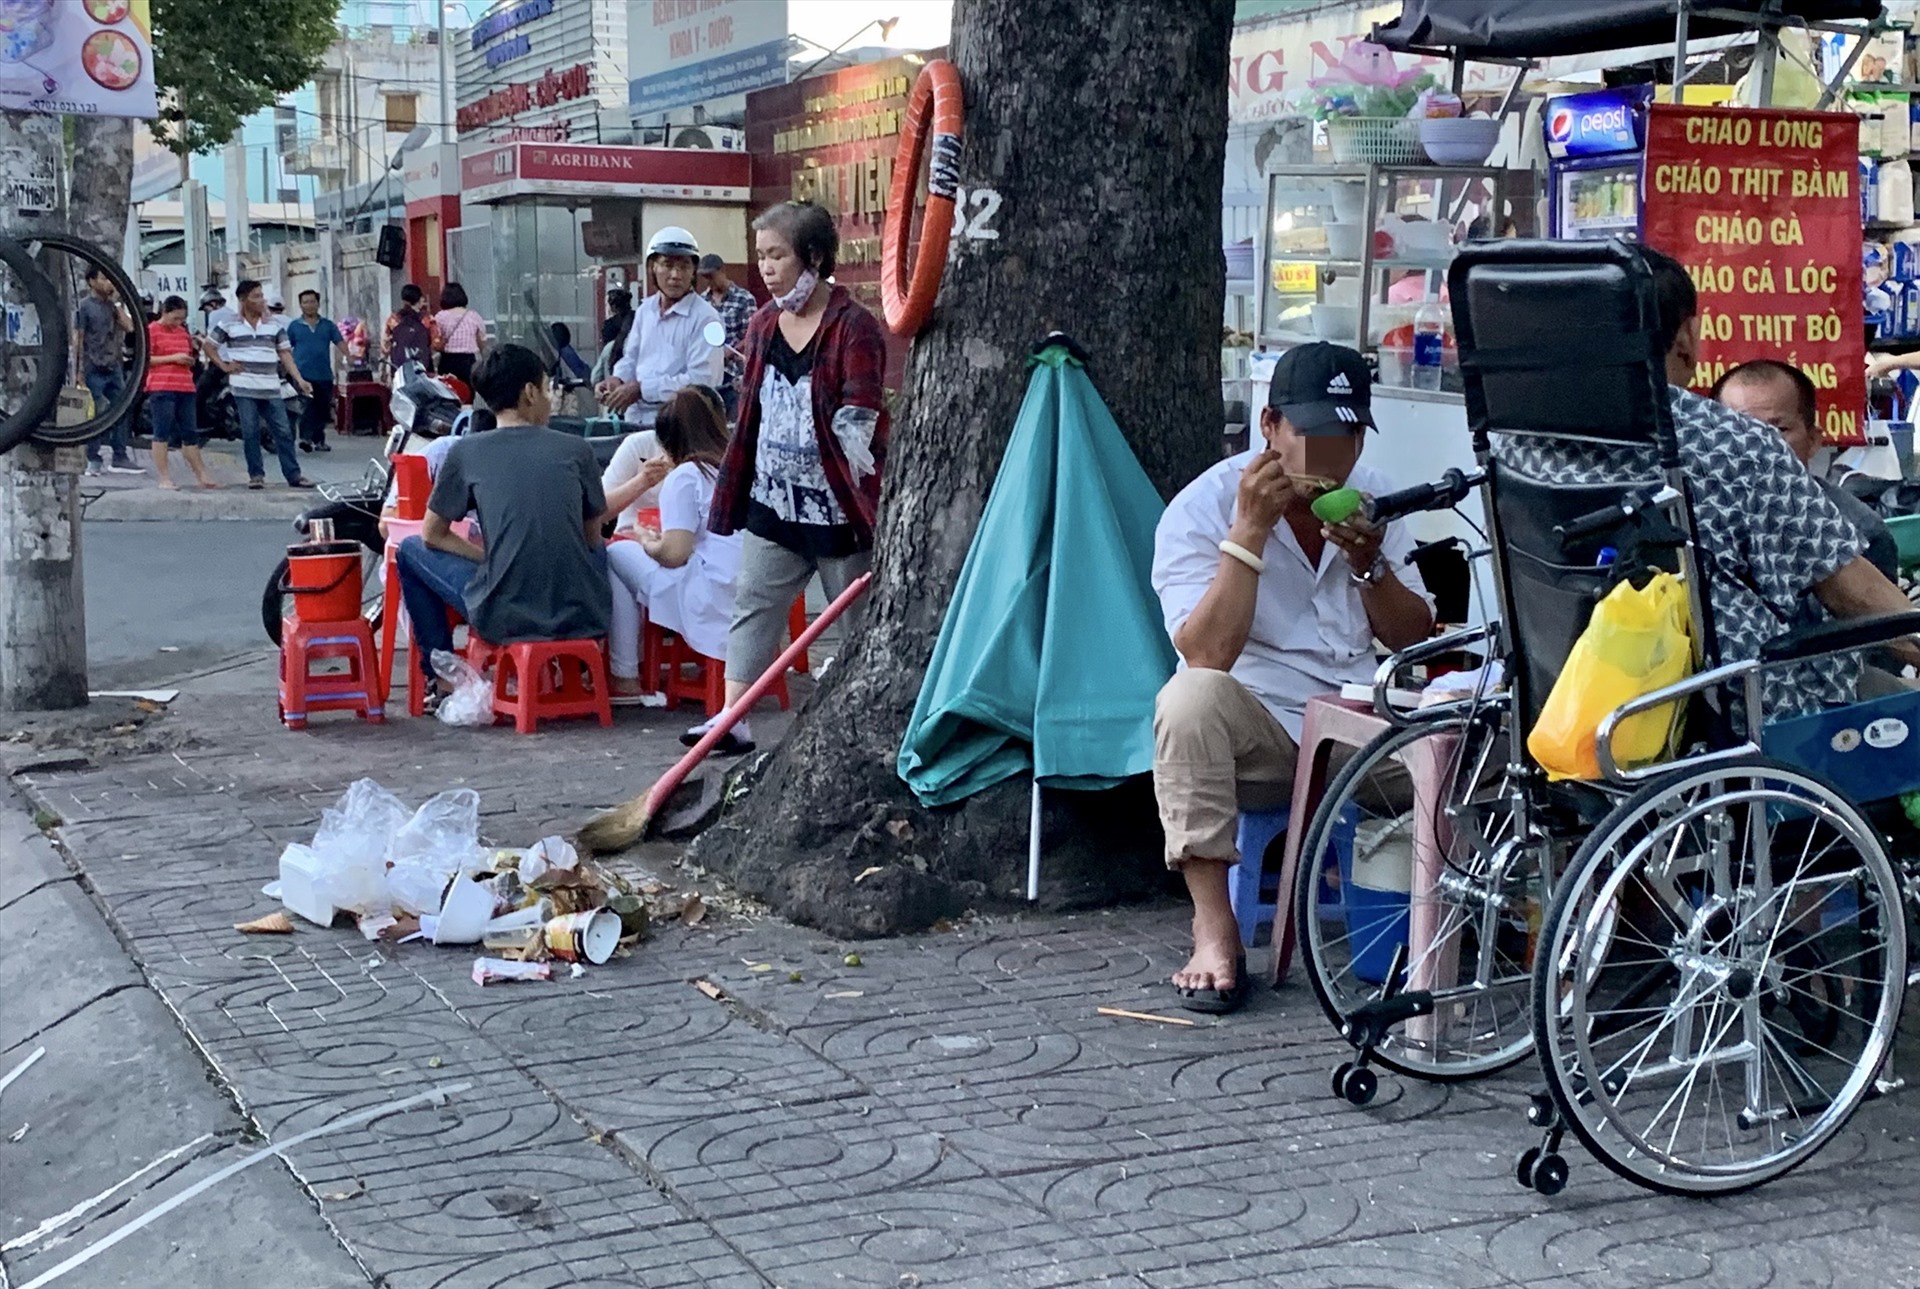 Dân thành thị Việt Nam còn muốn ngồi ăn trên đống rác bao lâu nữa?